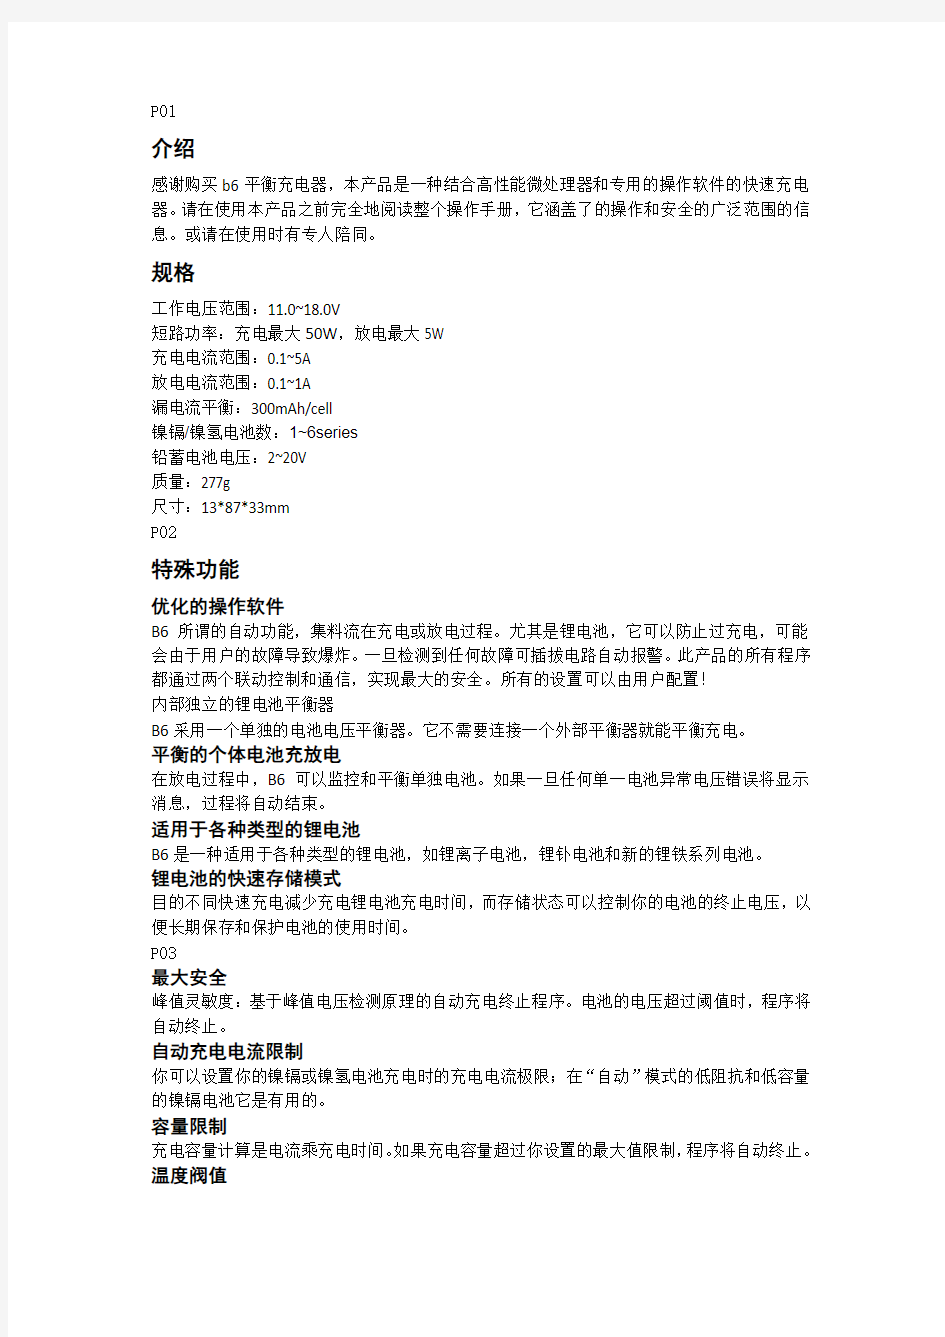 iMax B6充电器说明书中文翻译